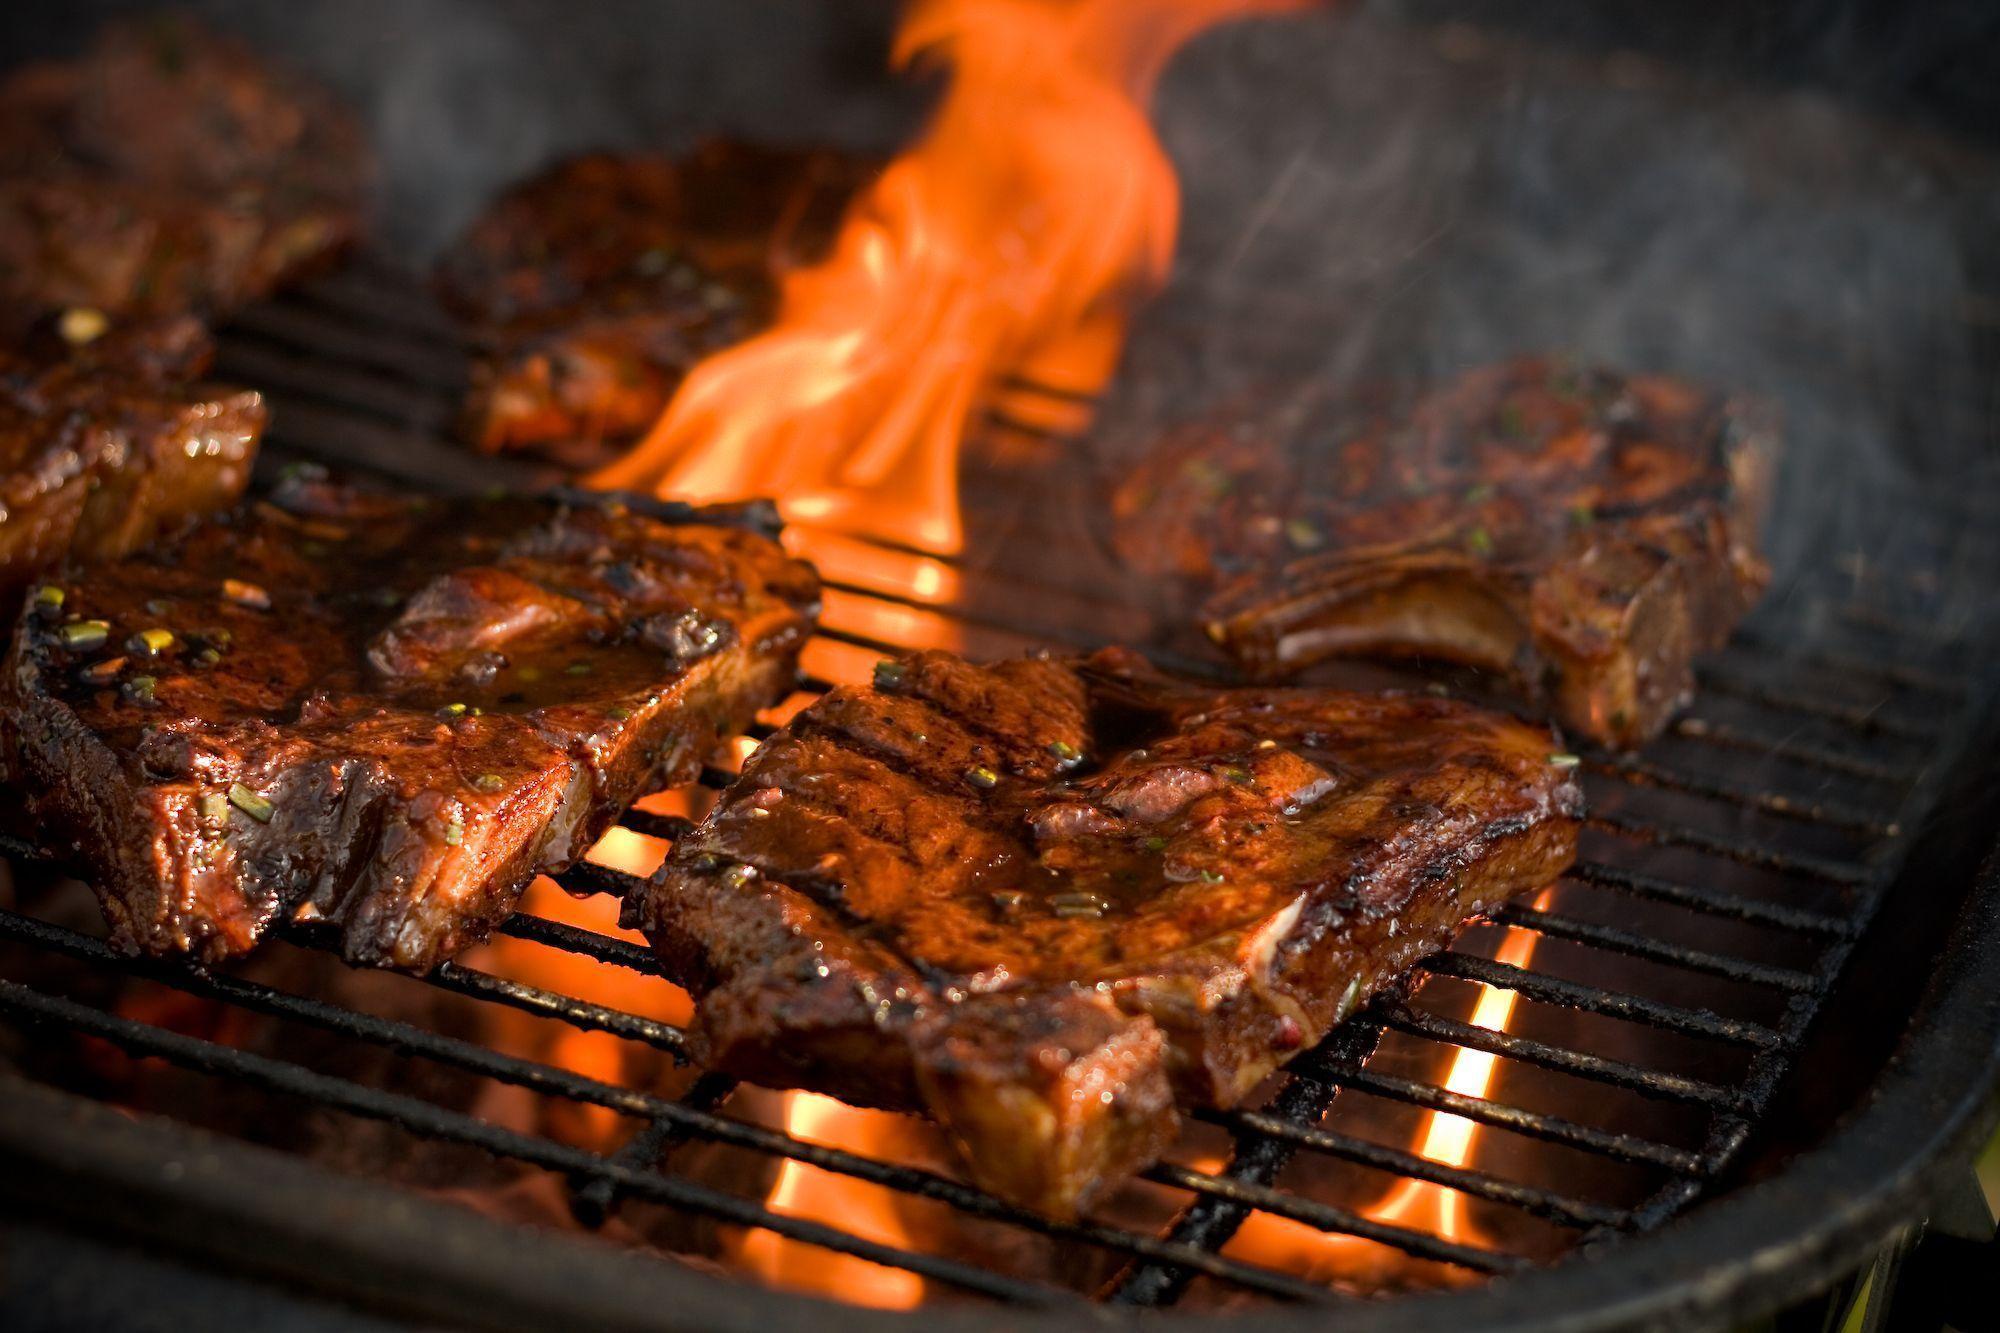 114-1141368_7-grilling-steak-in-flame-hd-wallpaper-meat.jpg